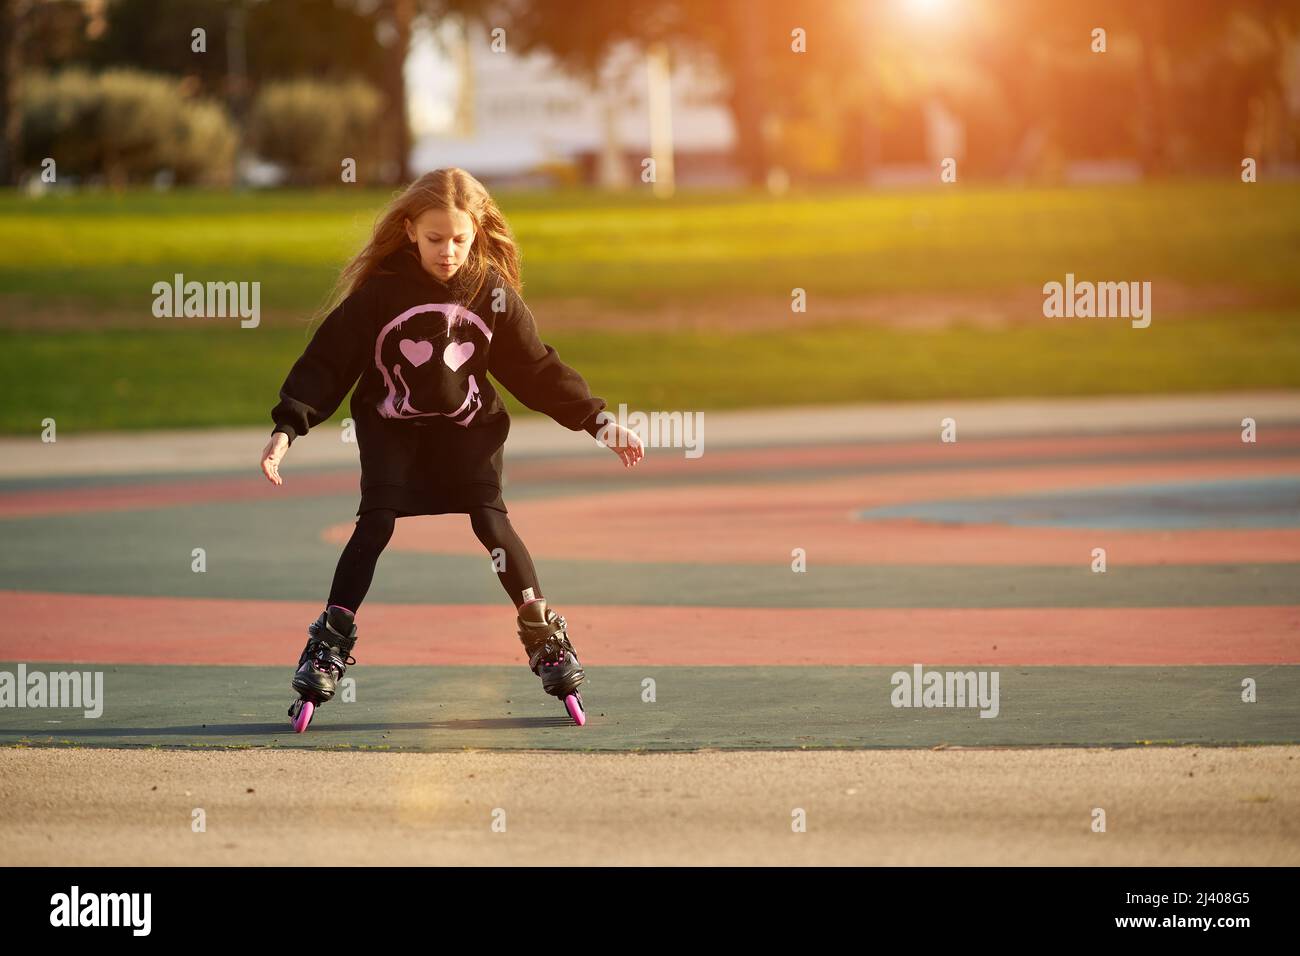 Petite jolie fille drôle heureuse sur patins à roulettes dans un parc, apprendre à faire du patin à roulettes en plein air Banque D'Images